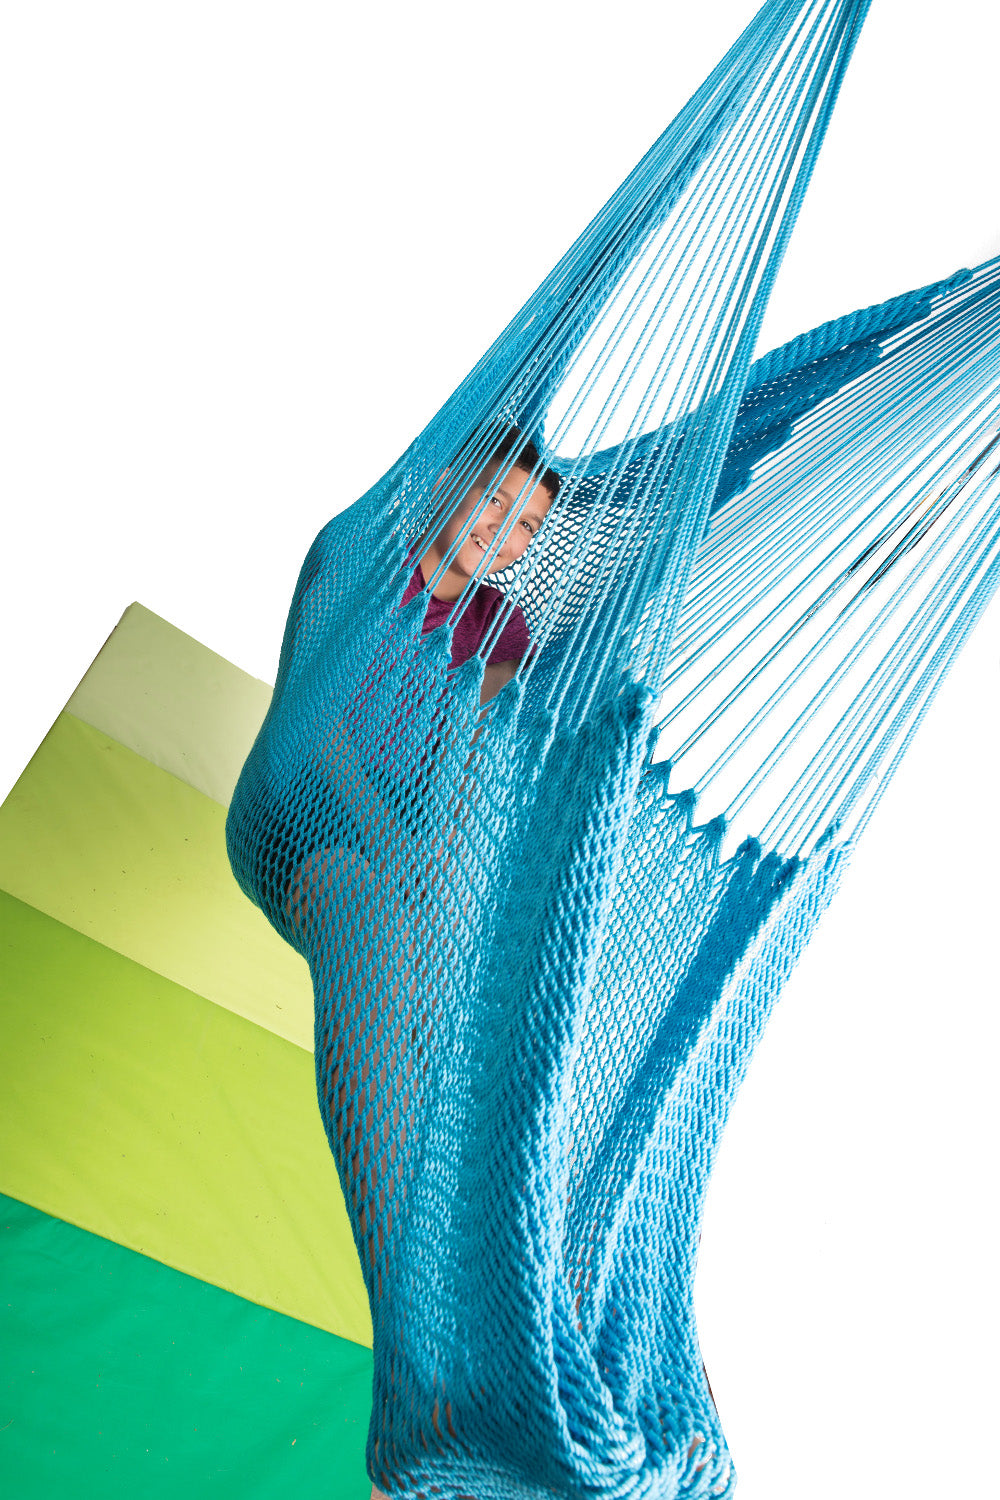 a teenage boy is resting in a blue hammock swing